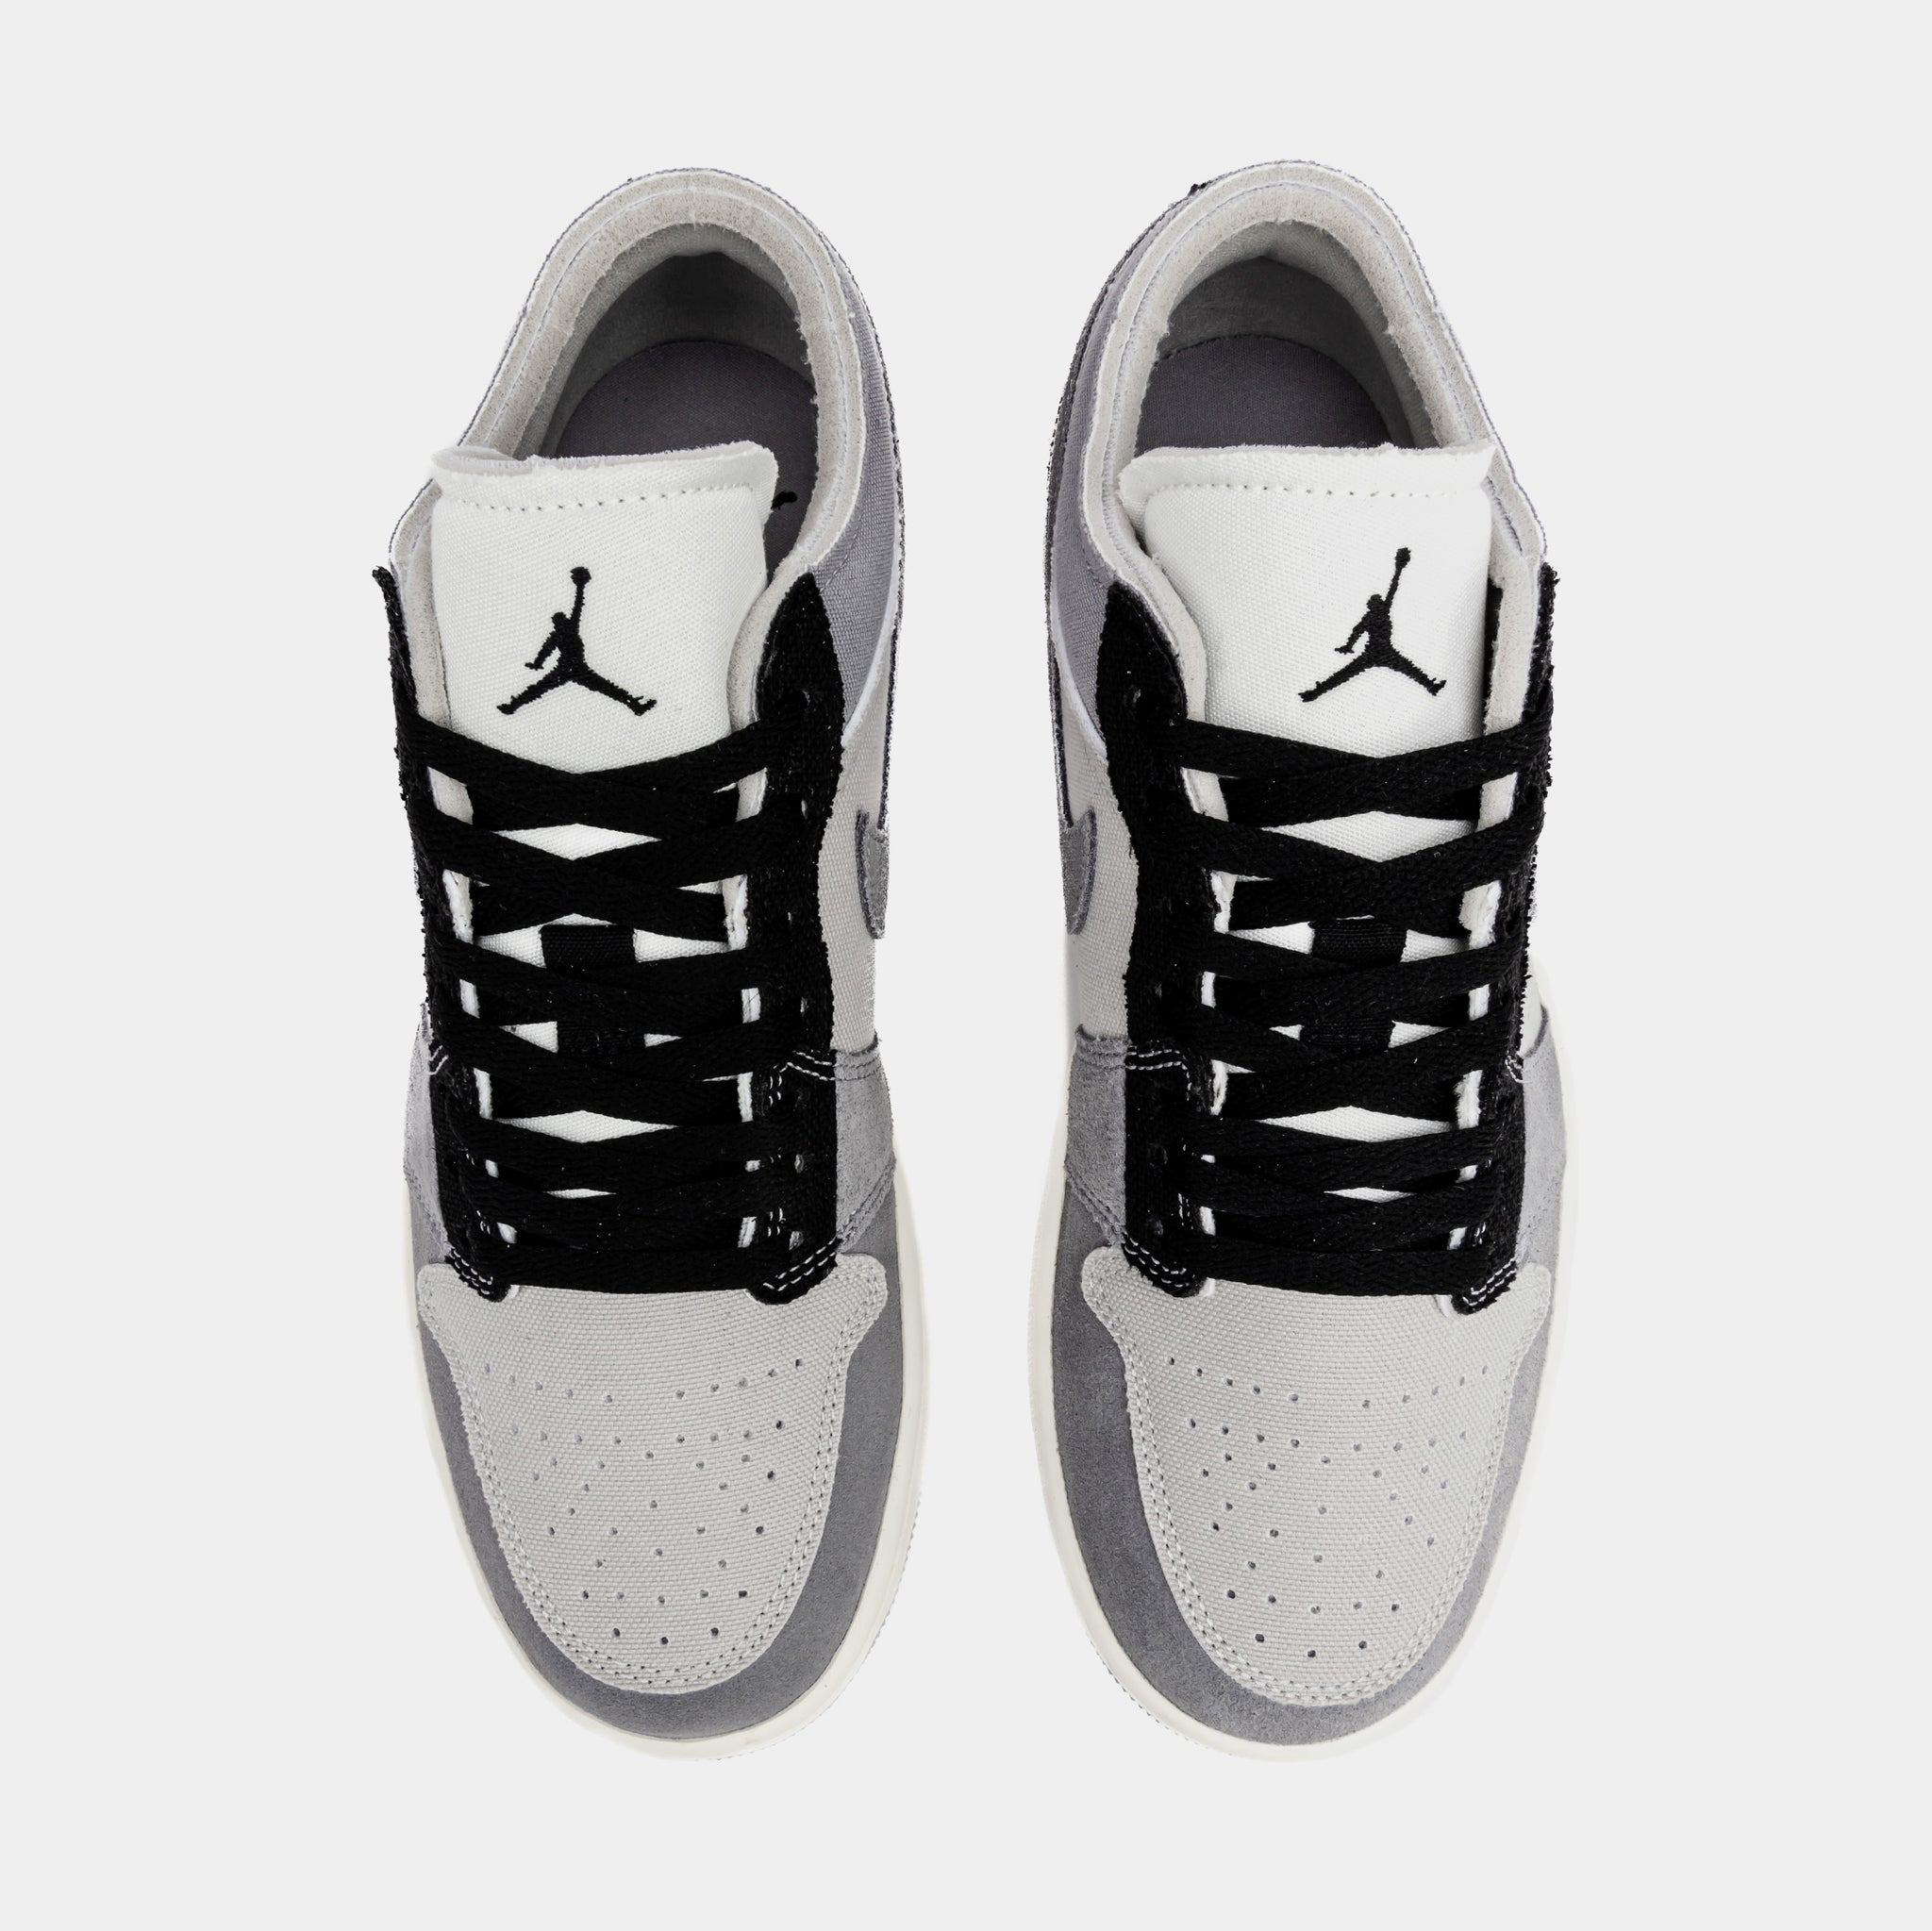 Air Jordan Men's 1 Low Basketball Shoes